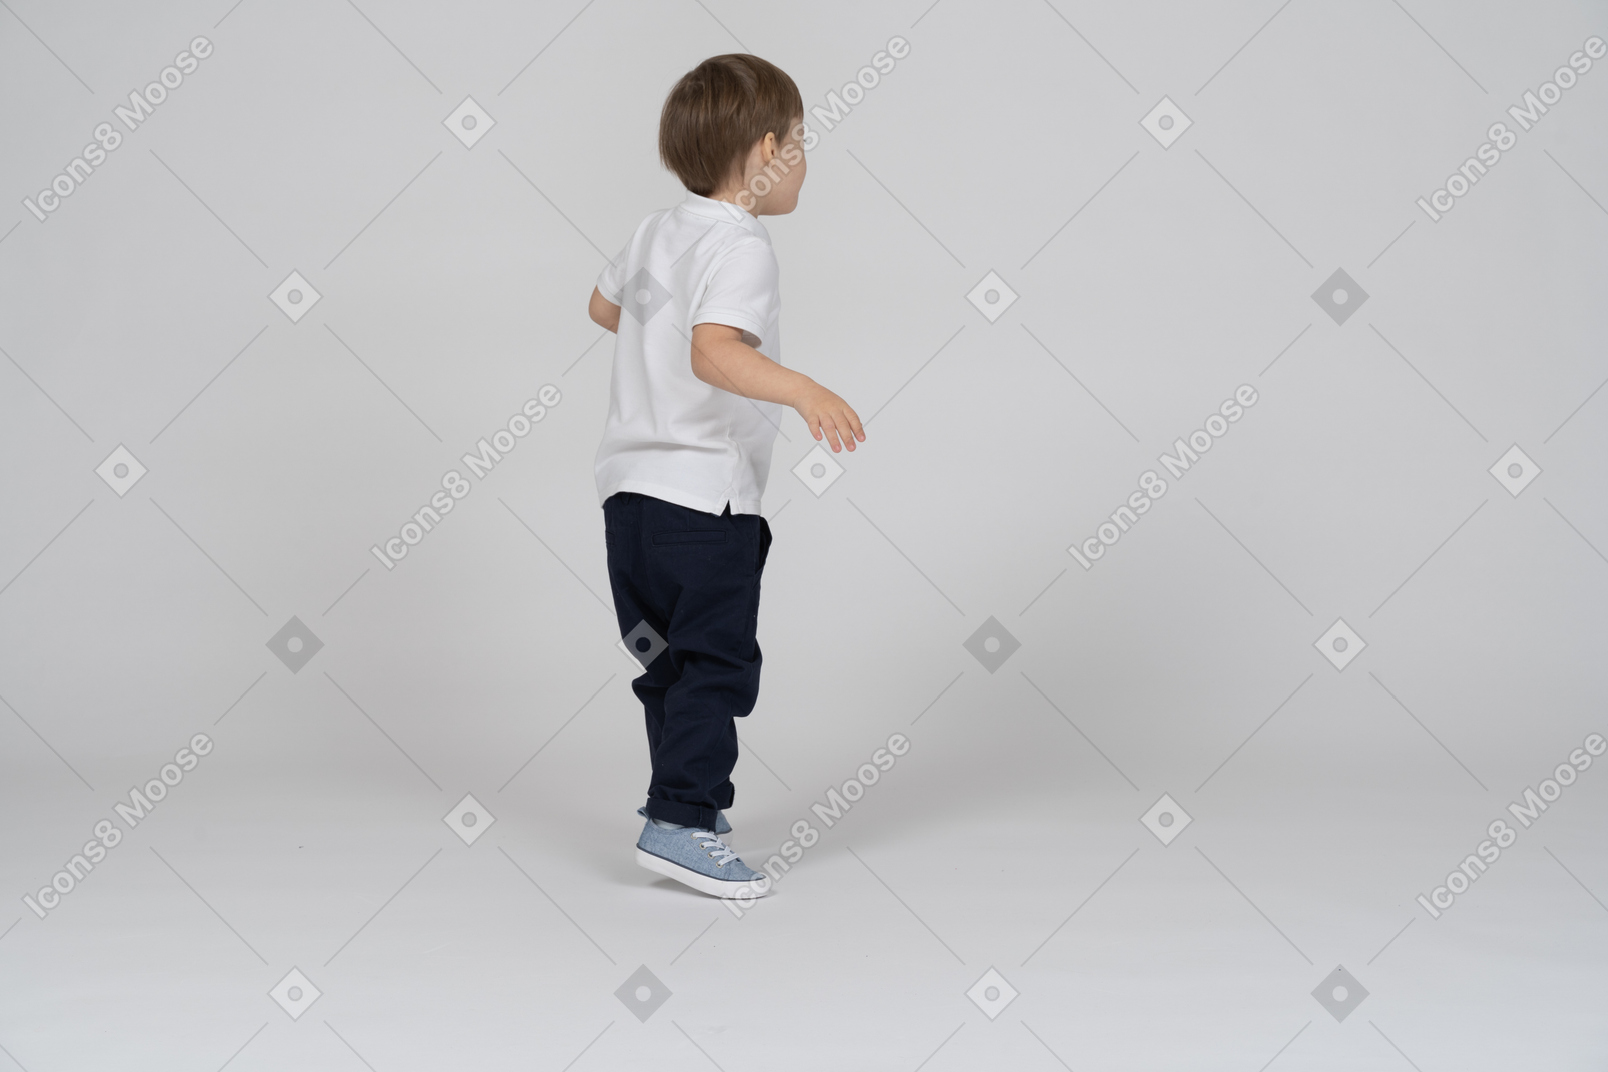 Вид сзади на мальчика, стоящего с согнутыми руками